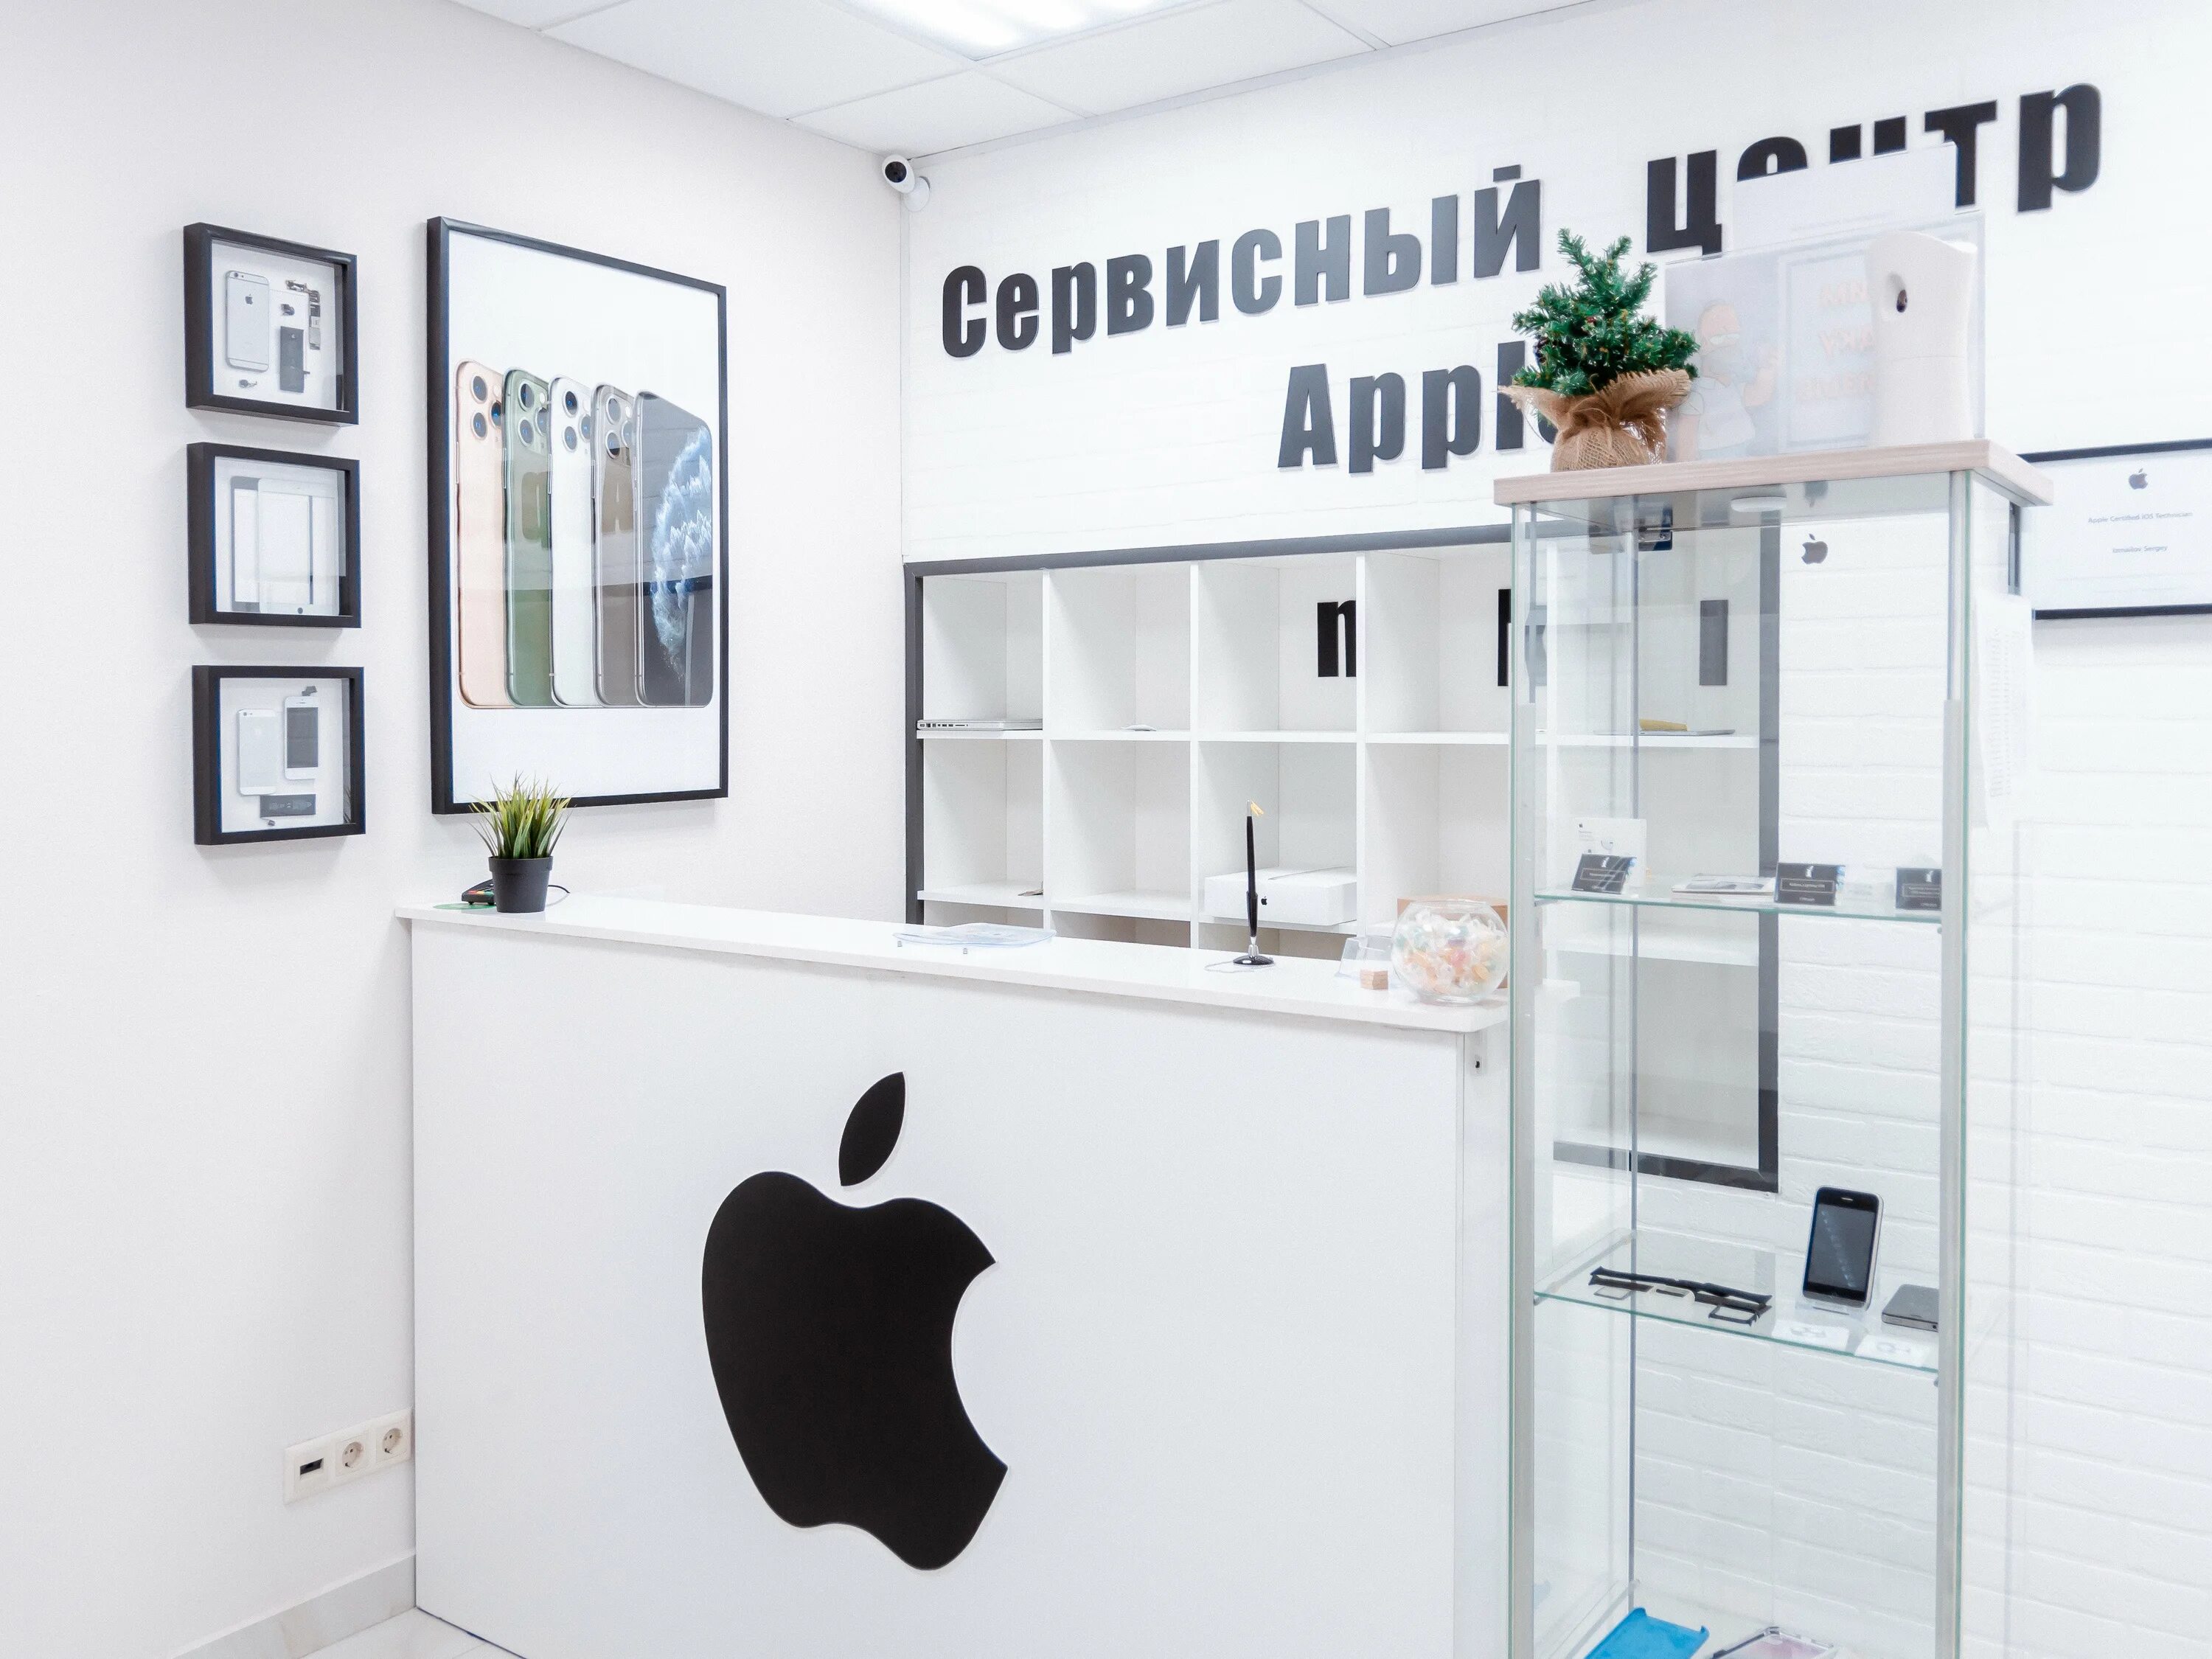 Сервисный центр Apple. Сервисный центр эпл. Сервис центр эпл. Сервисный центр Apple в Москве.